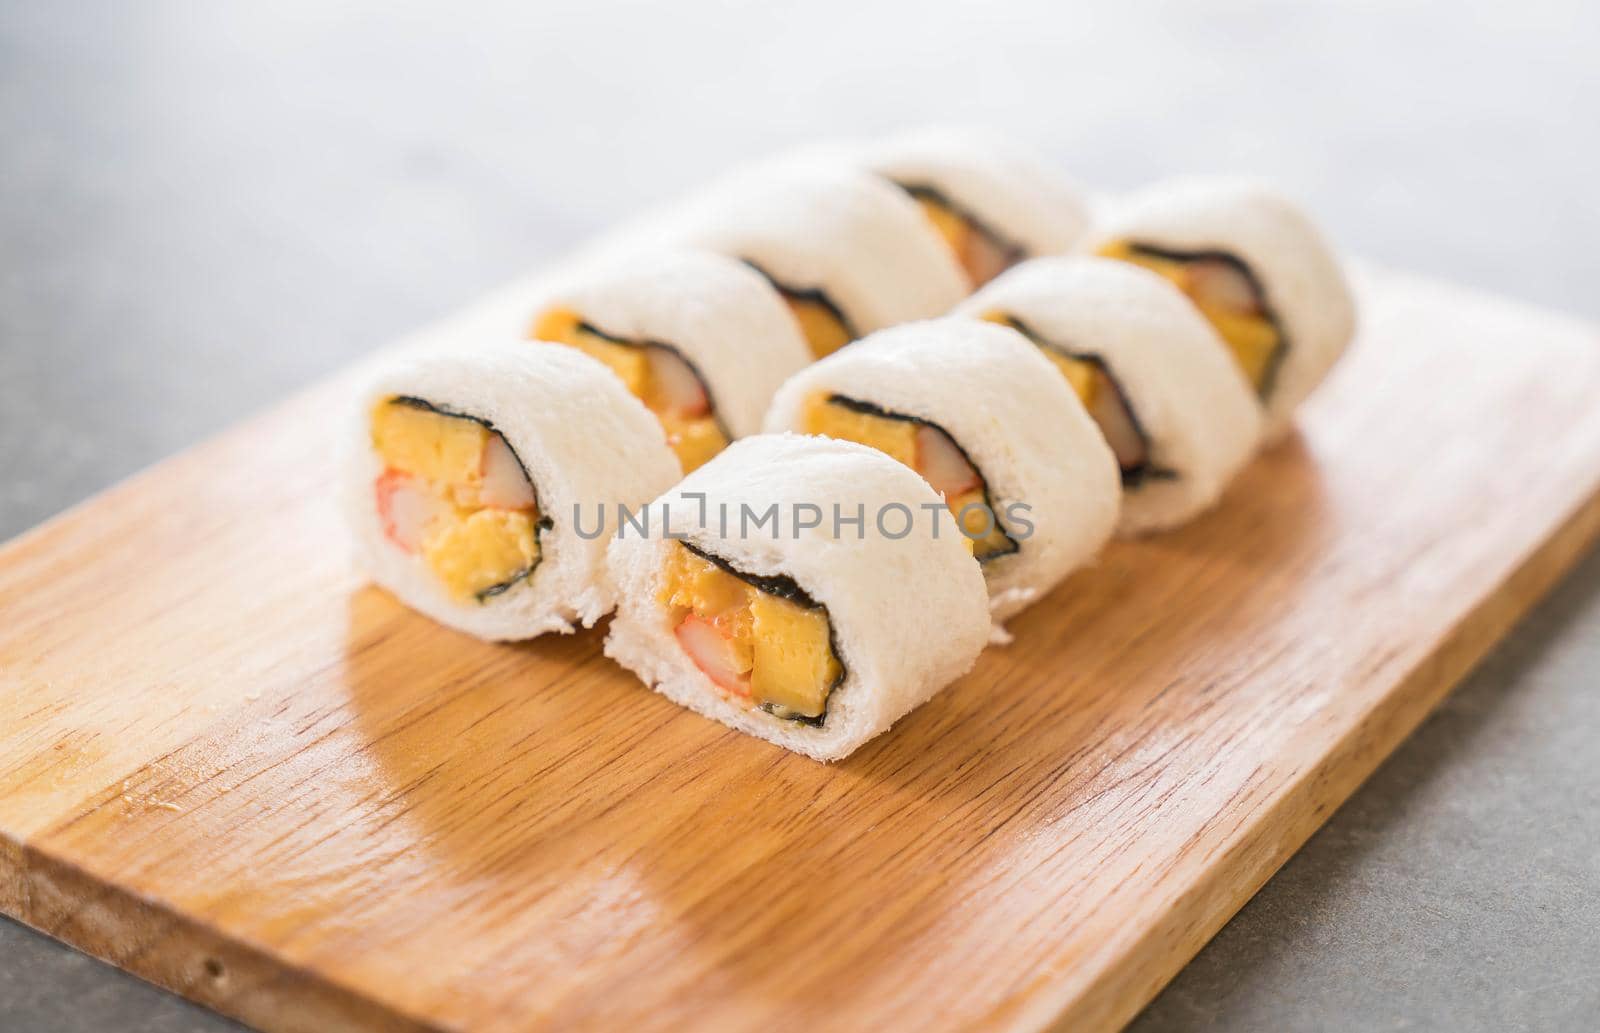 sushi sandwich roll - fusion food